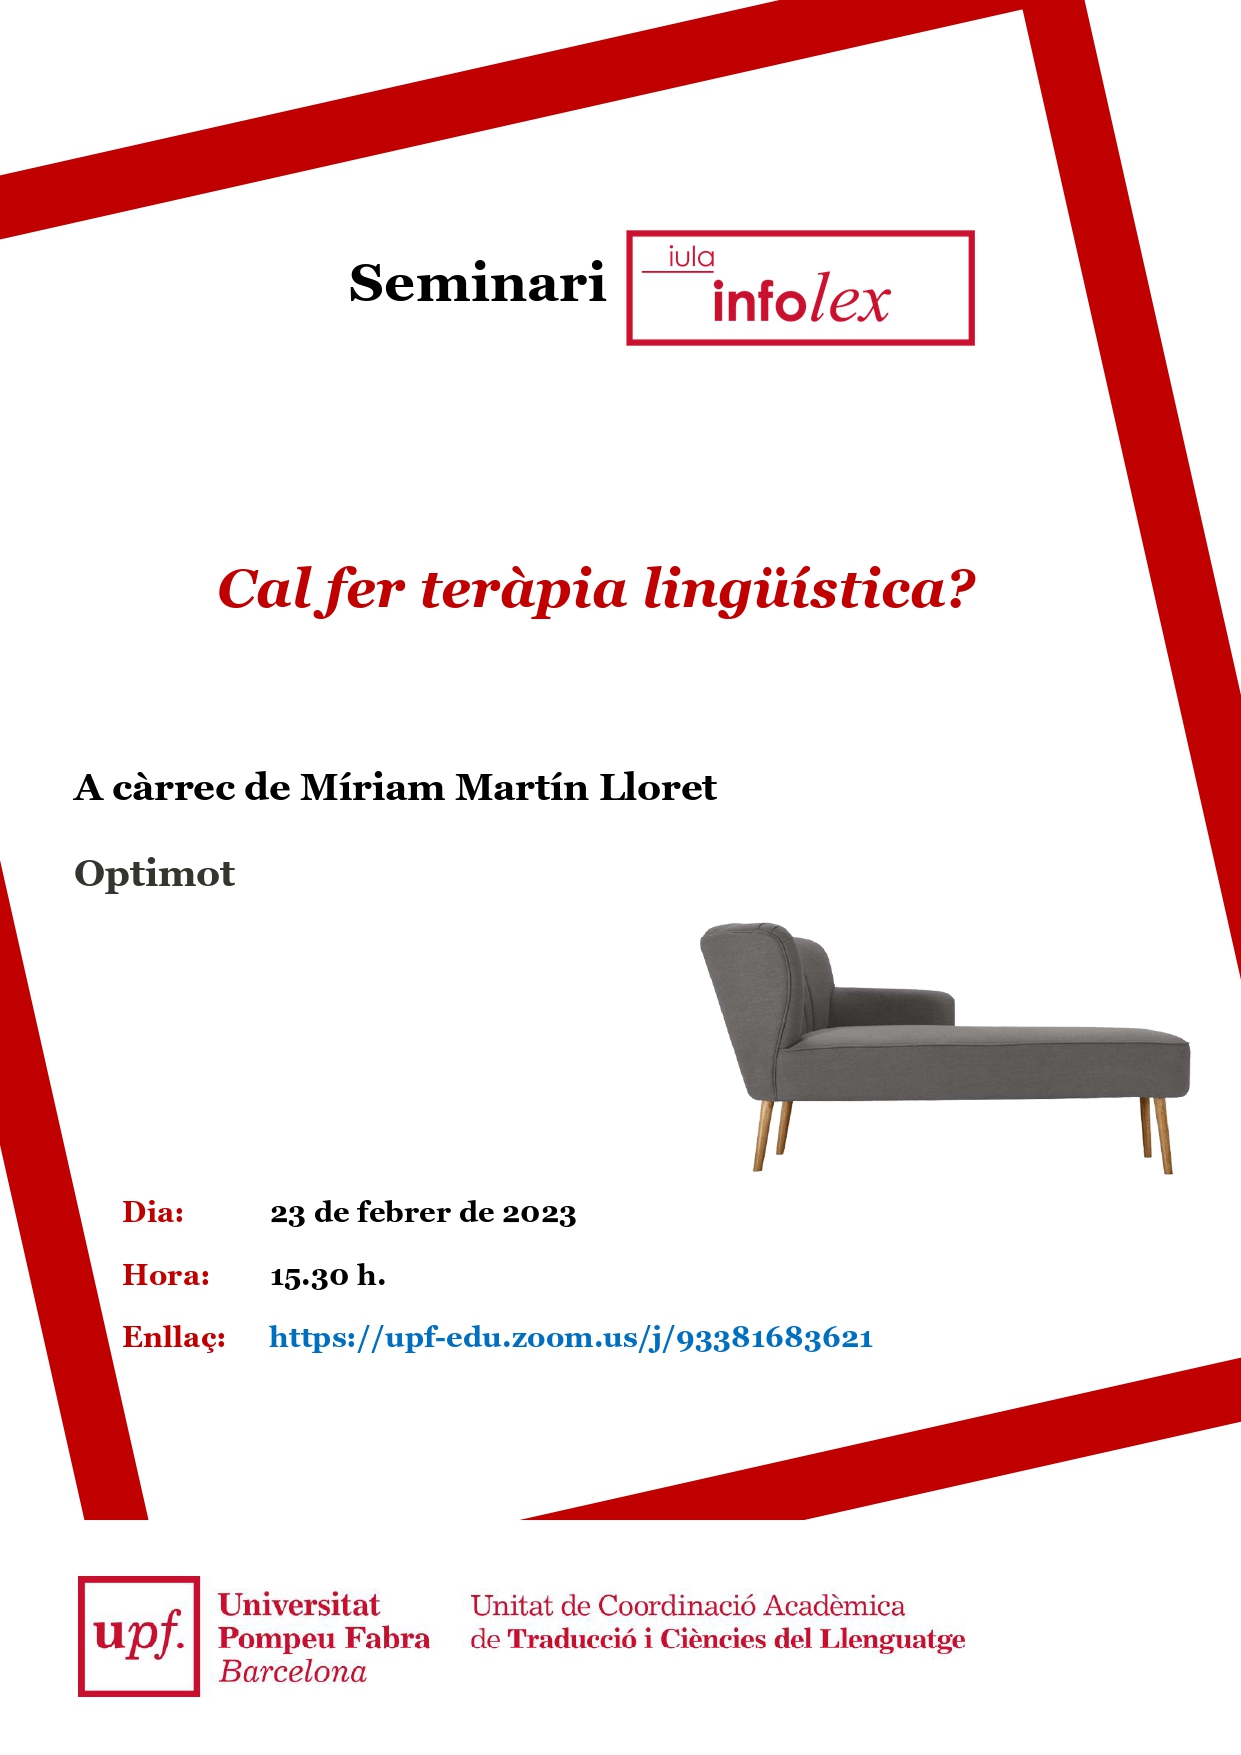 23/02/2023 Seminari en línia del grup InfoLex, a càrrec de Míriam Martín Lloret